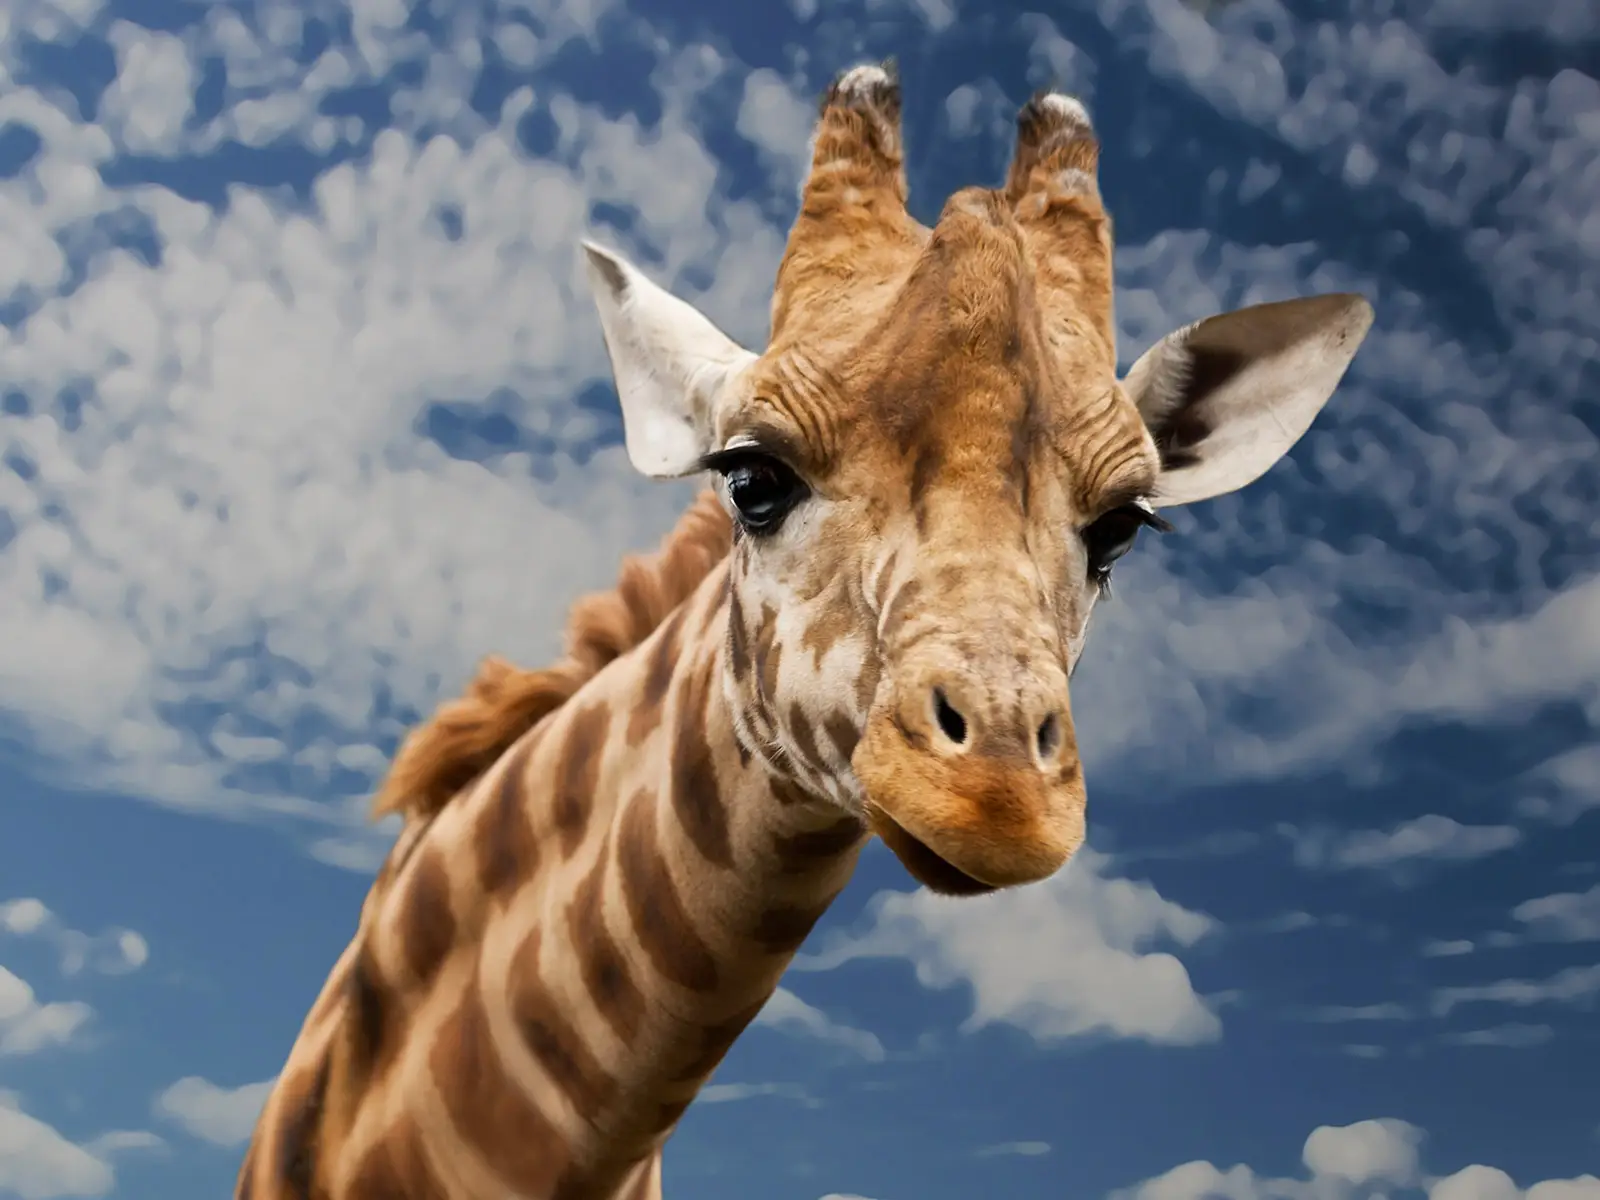 Le 5 curiosità che non sapevate sulle giraffe